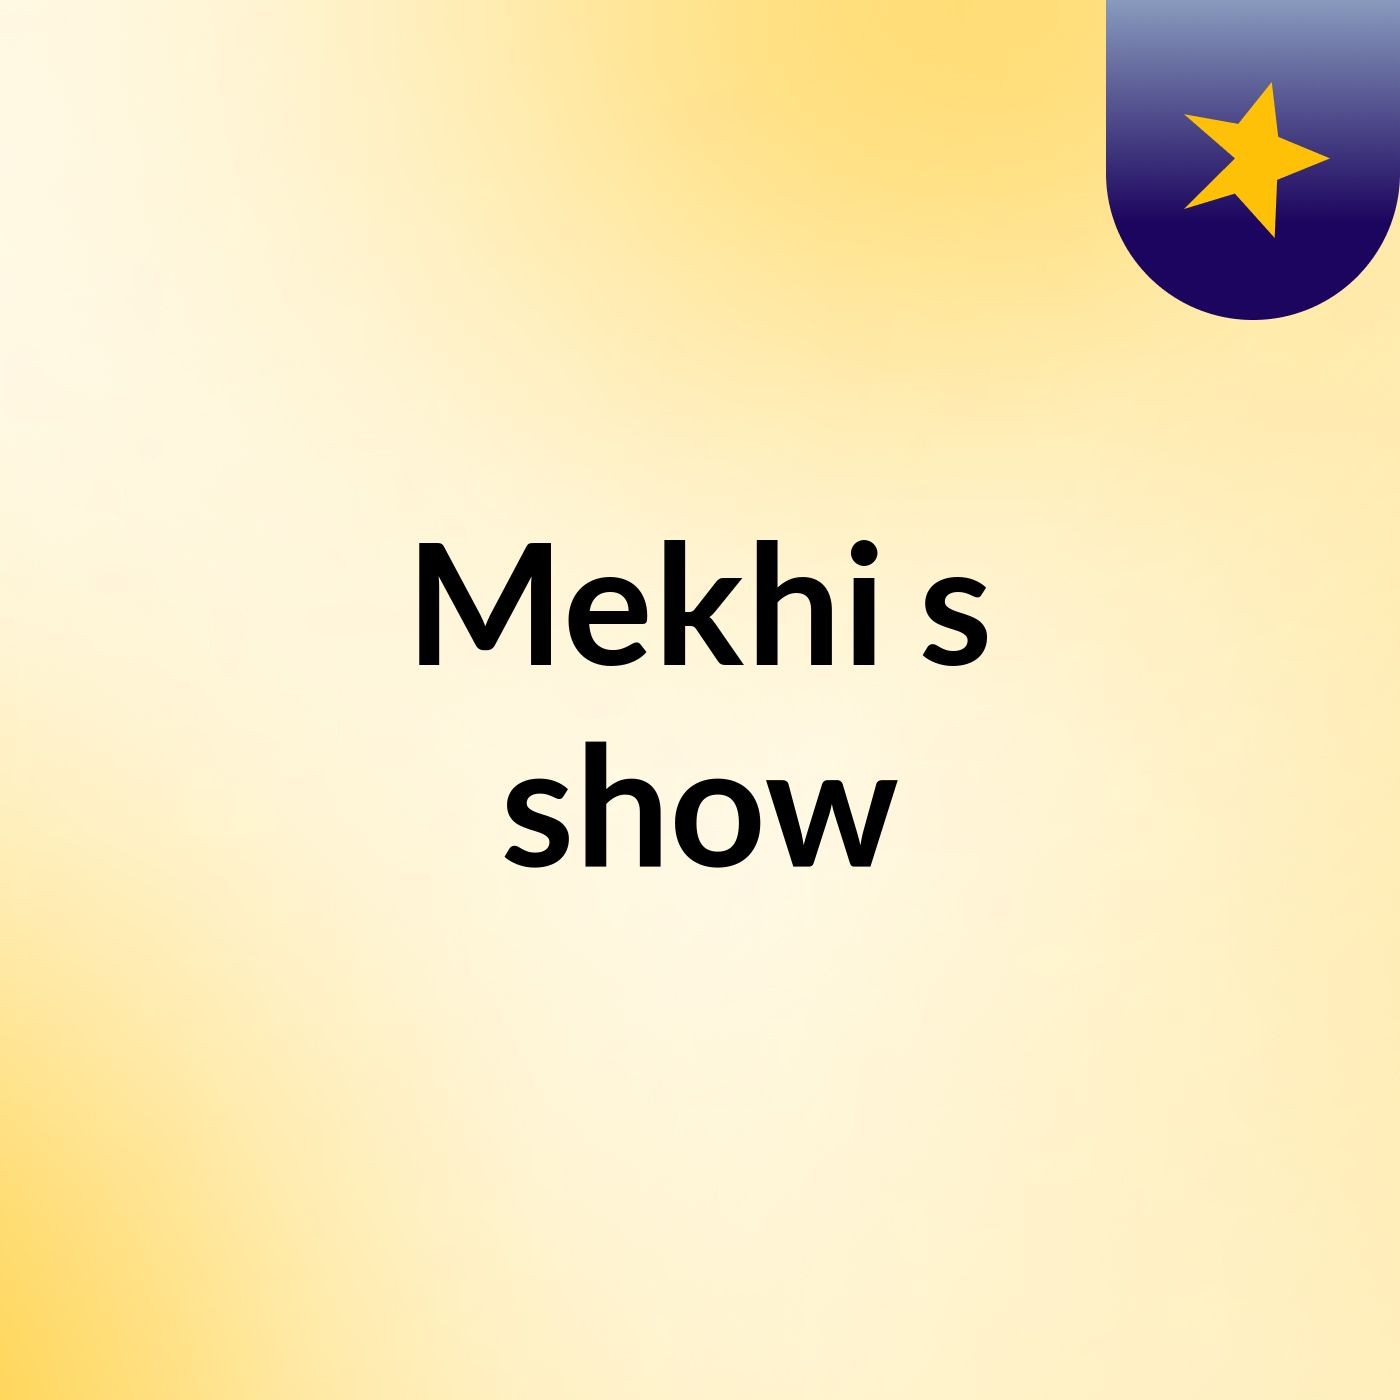 Mekhi's show